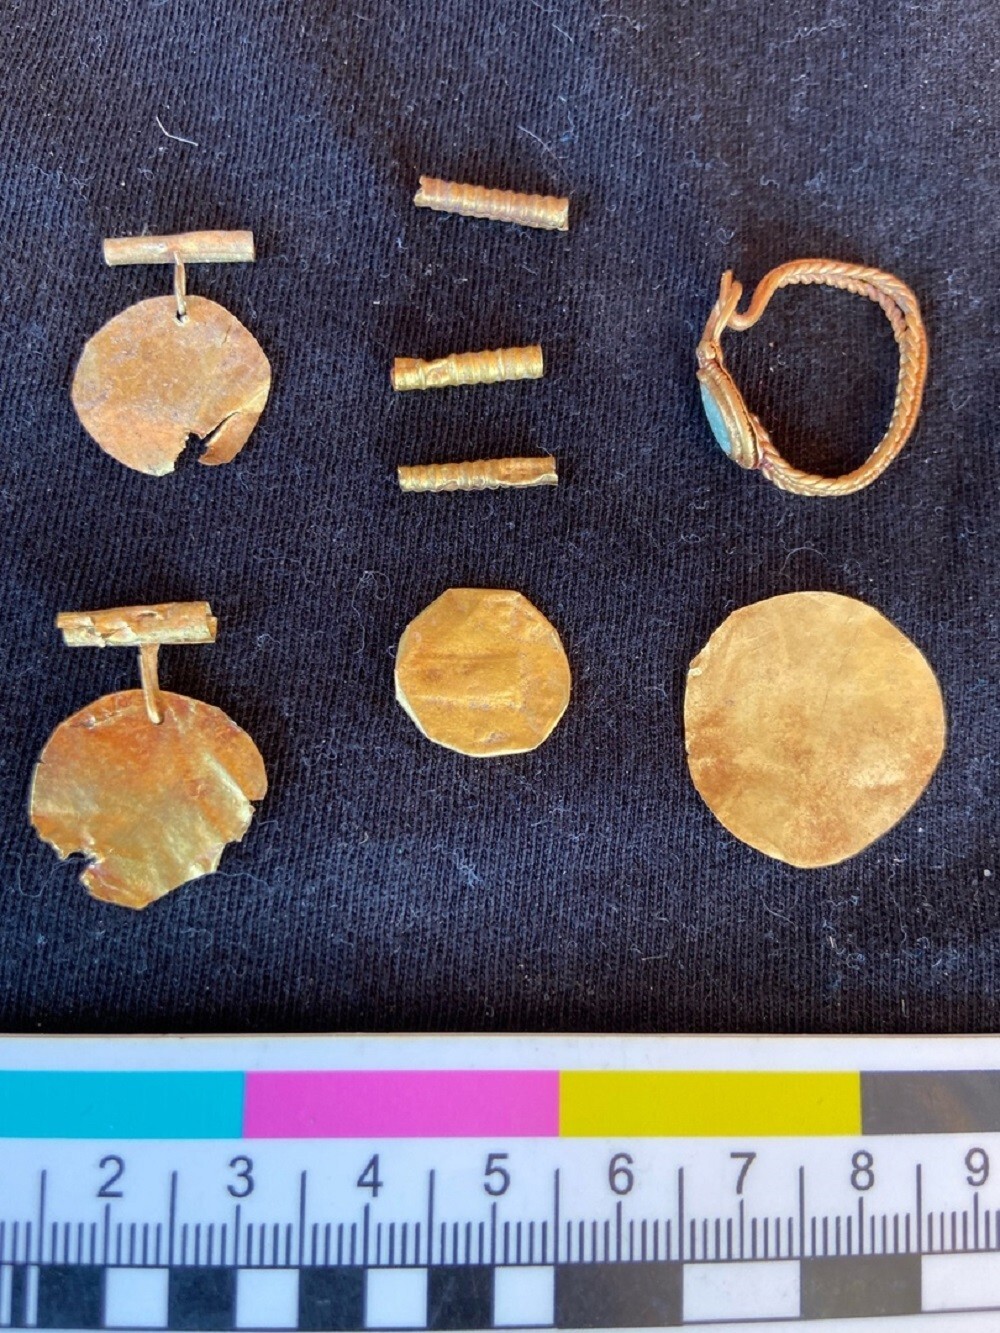 Под Керчью археологи нашли золотые украшения с Медузой Горгоной и львом